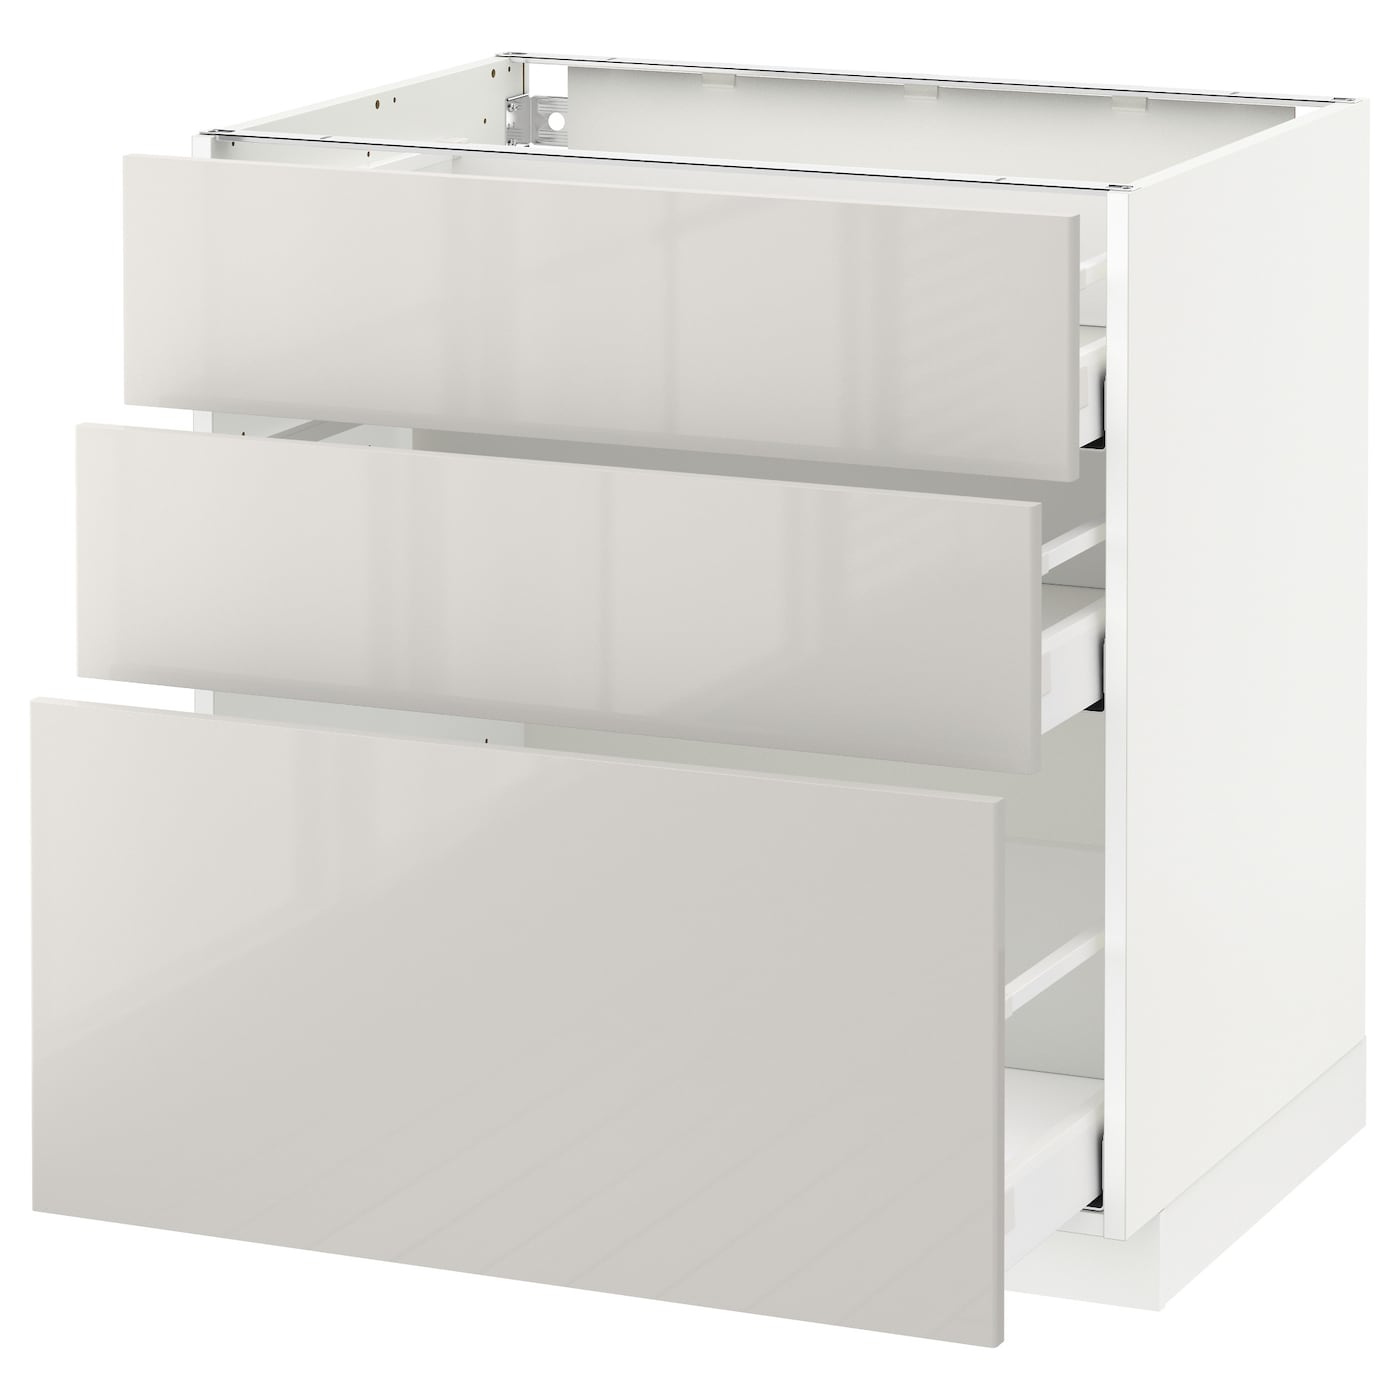 Напольный шкаф  - IKEA METOD MAXIMERA, 88x62x80см, белый/светло-серый, МЕТОД МАКСИМЕРА ИКЕА